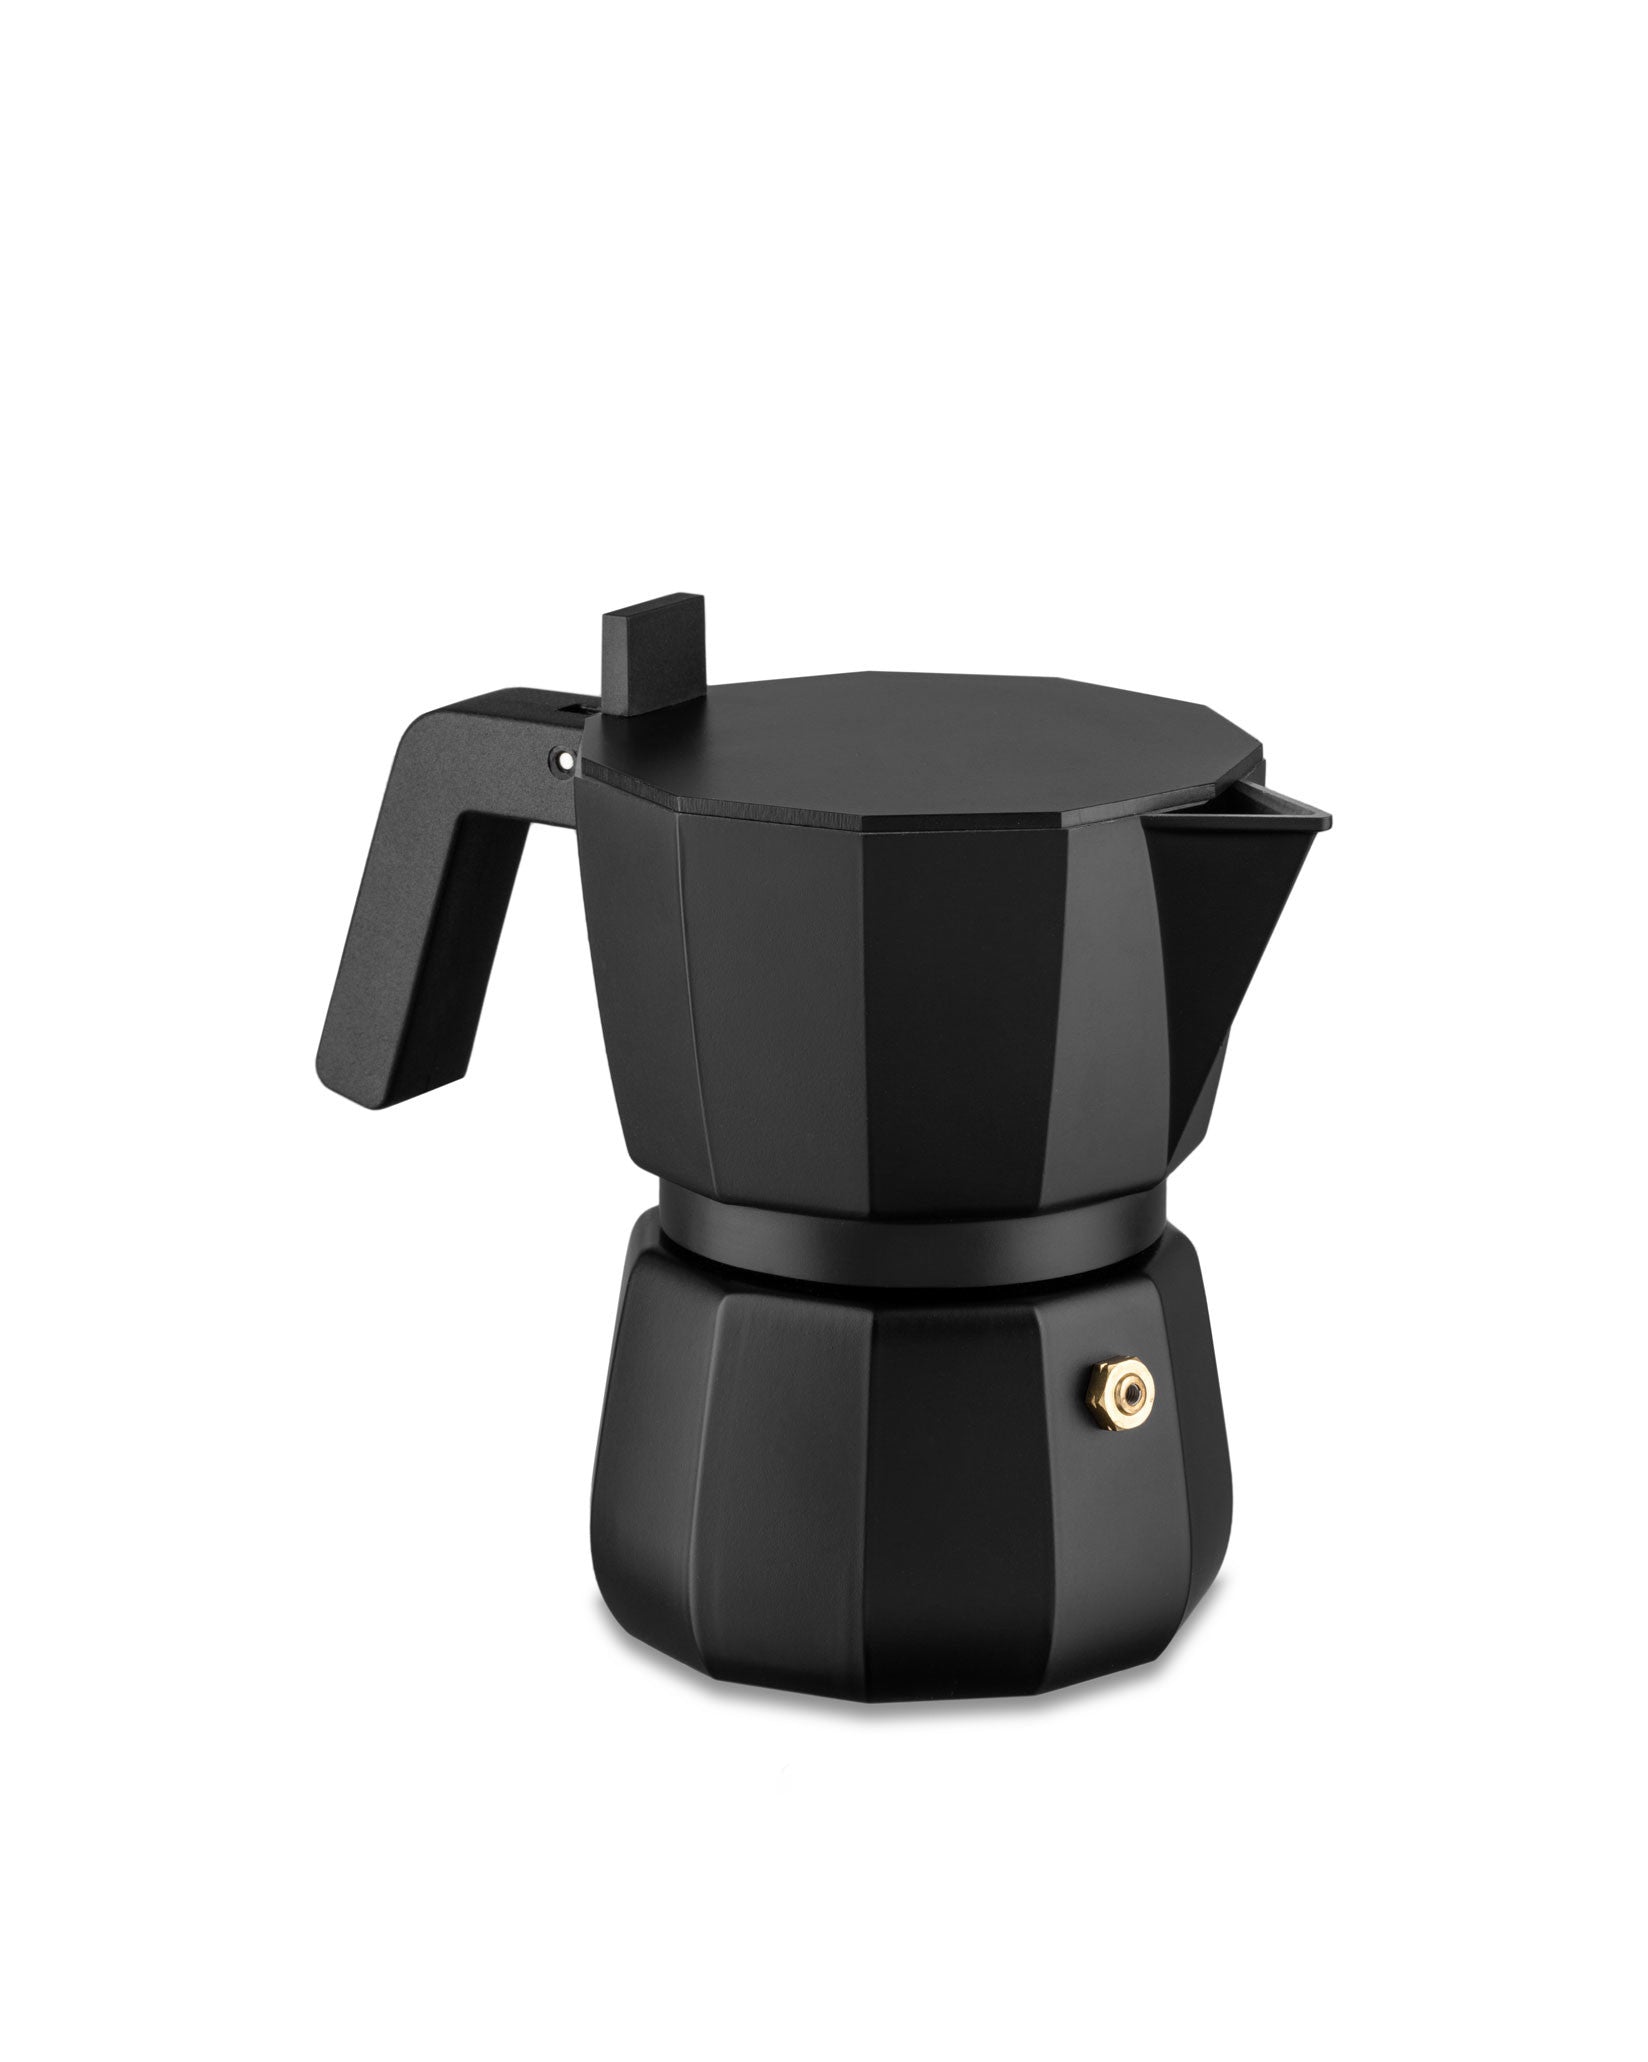 Moka - Espresso coffee maker in aluminium casting, black. – Alessi Spa (EU)